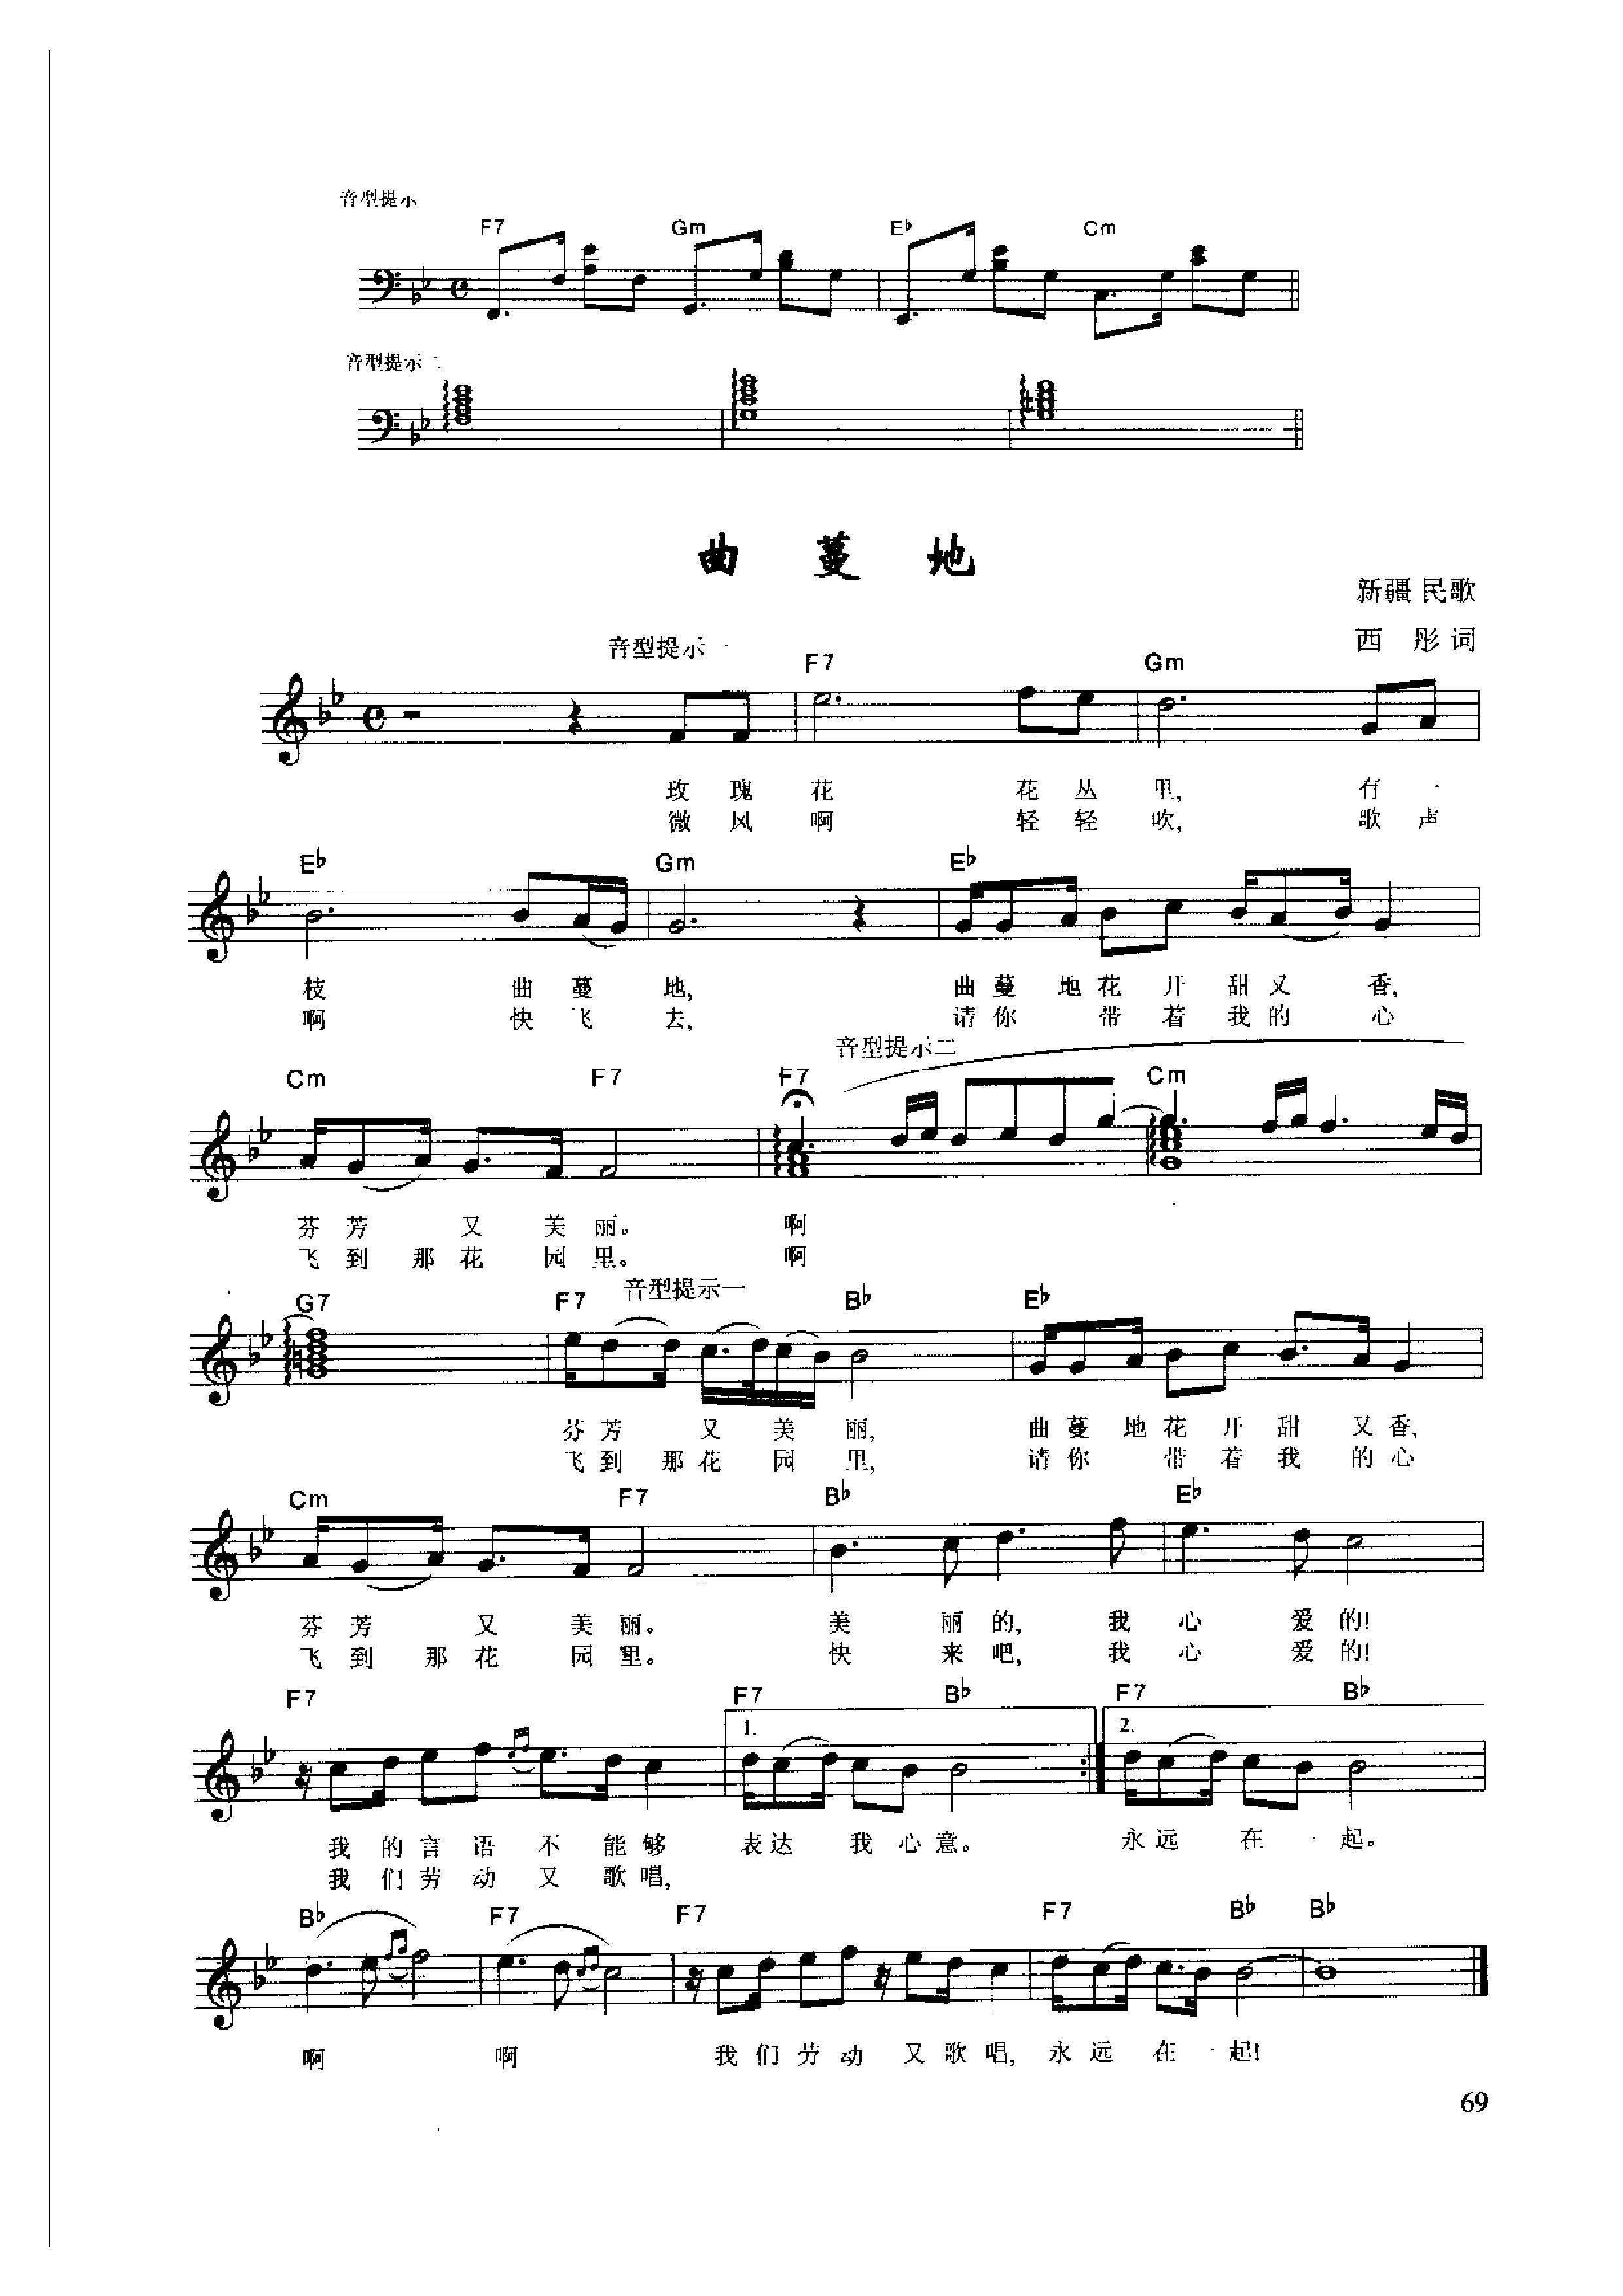 钢琴即兴伴奏简谱教程(钢琴即兴伴奏教程pdf)